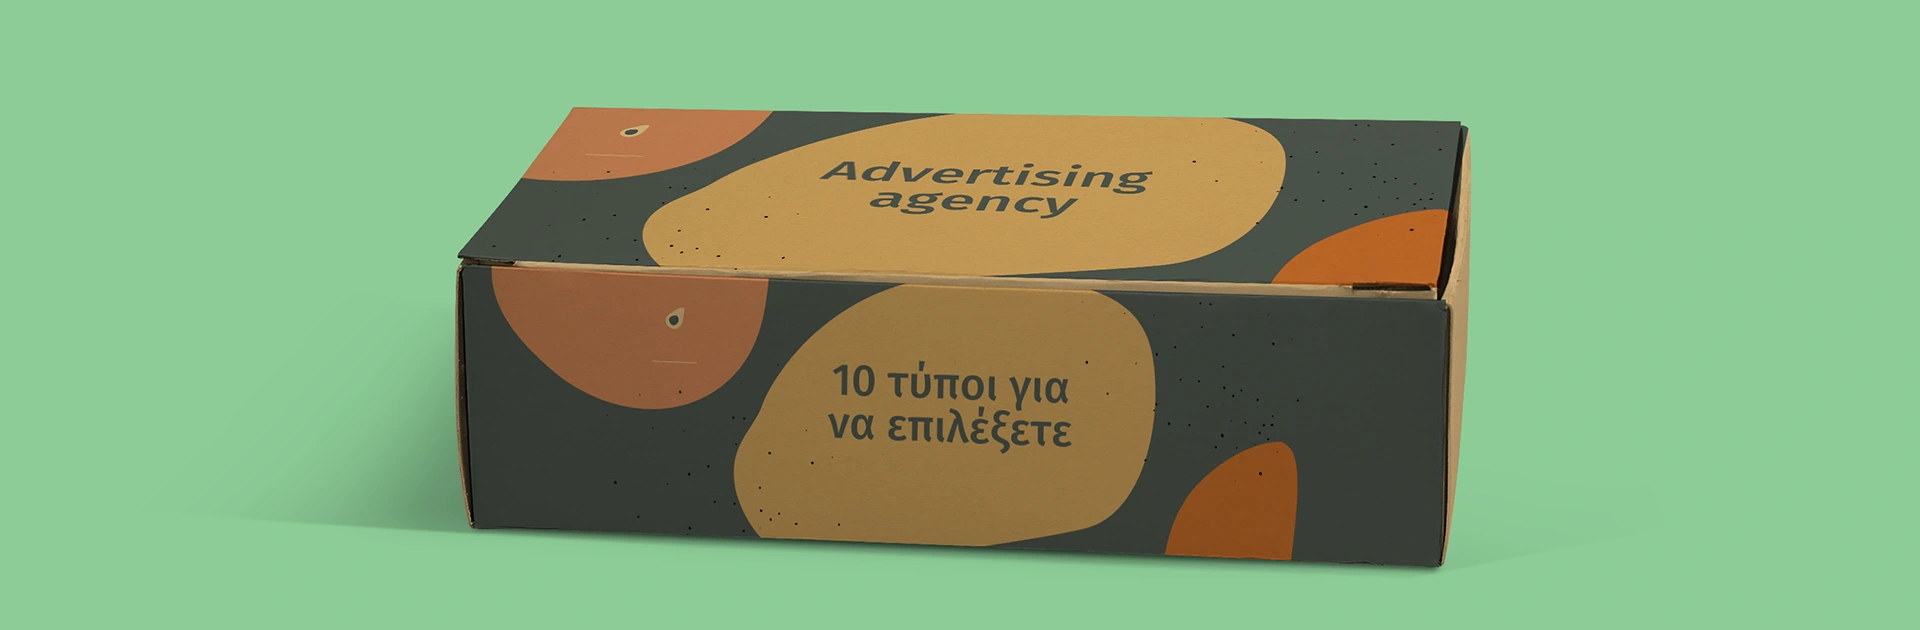 Article - Advertising agency: 10 τύποι για να επιλέξετε